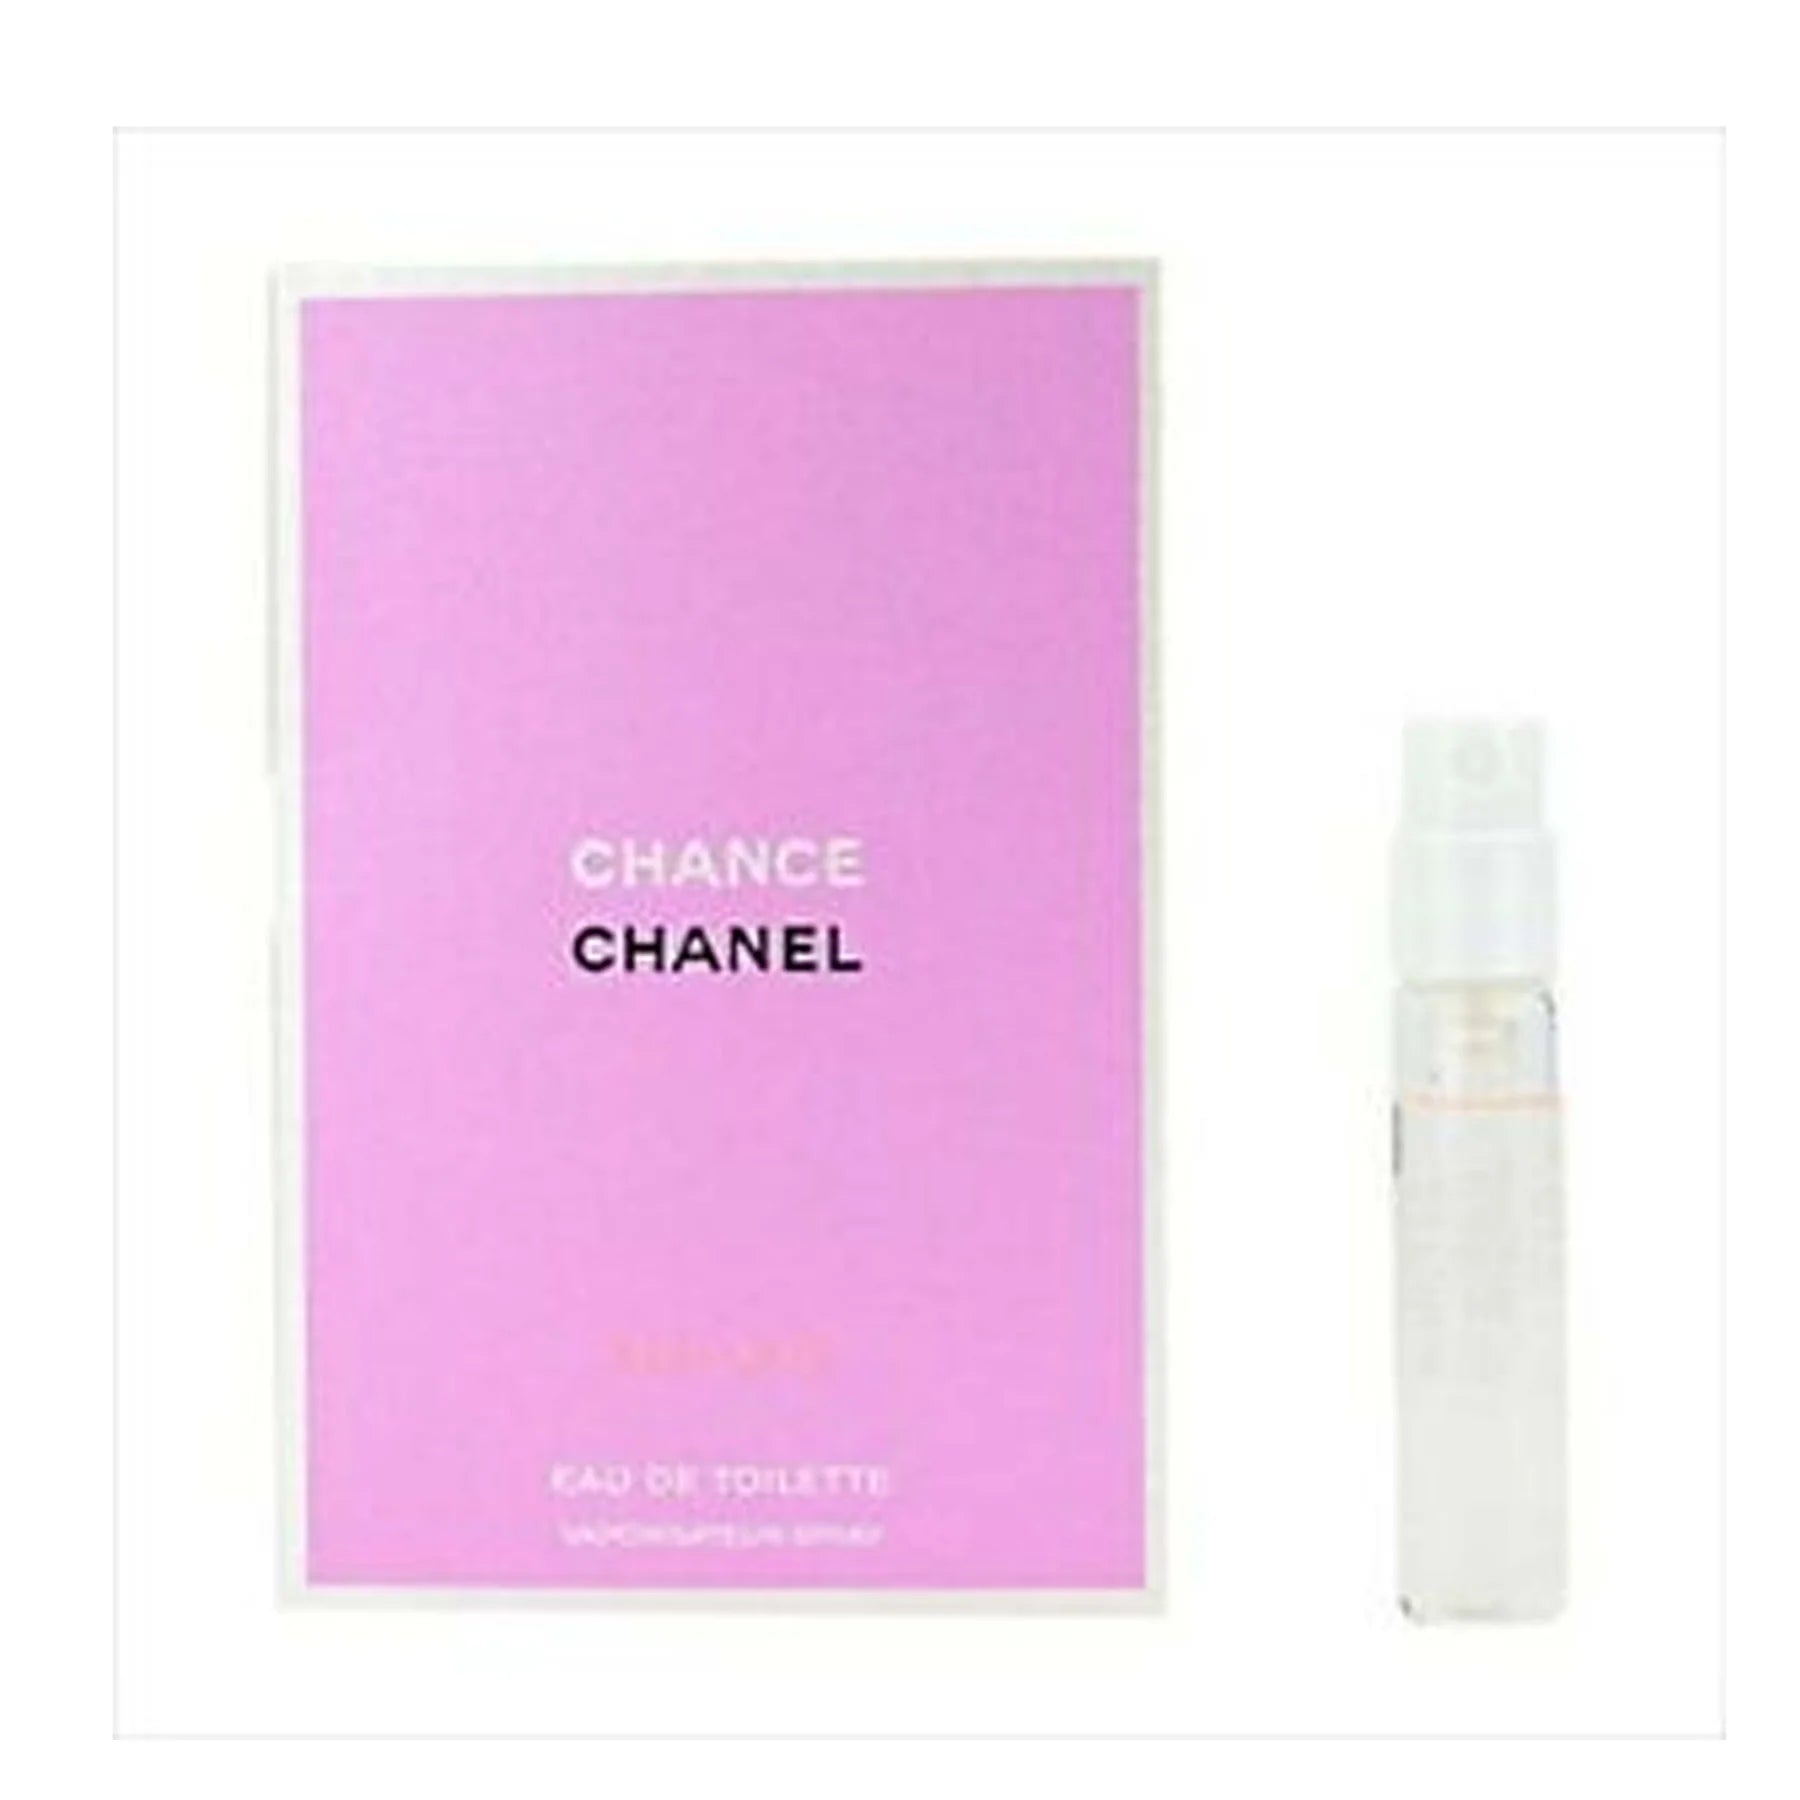 Chanel - No 5 L'Eau (L) 1,5ml туалетная вода, пробник